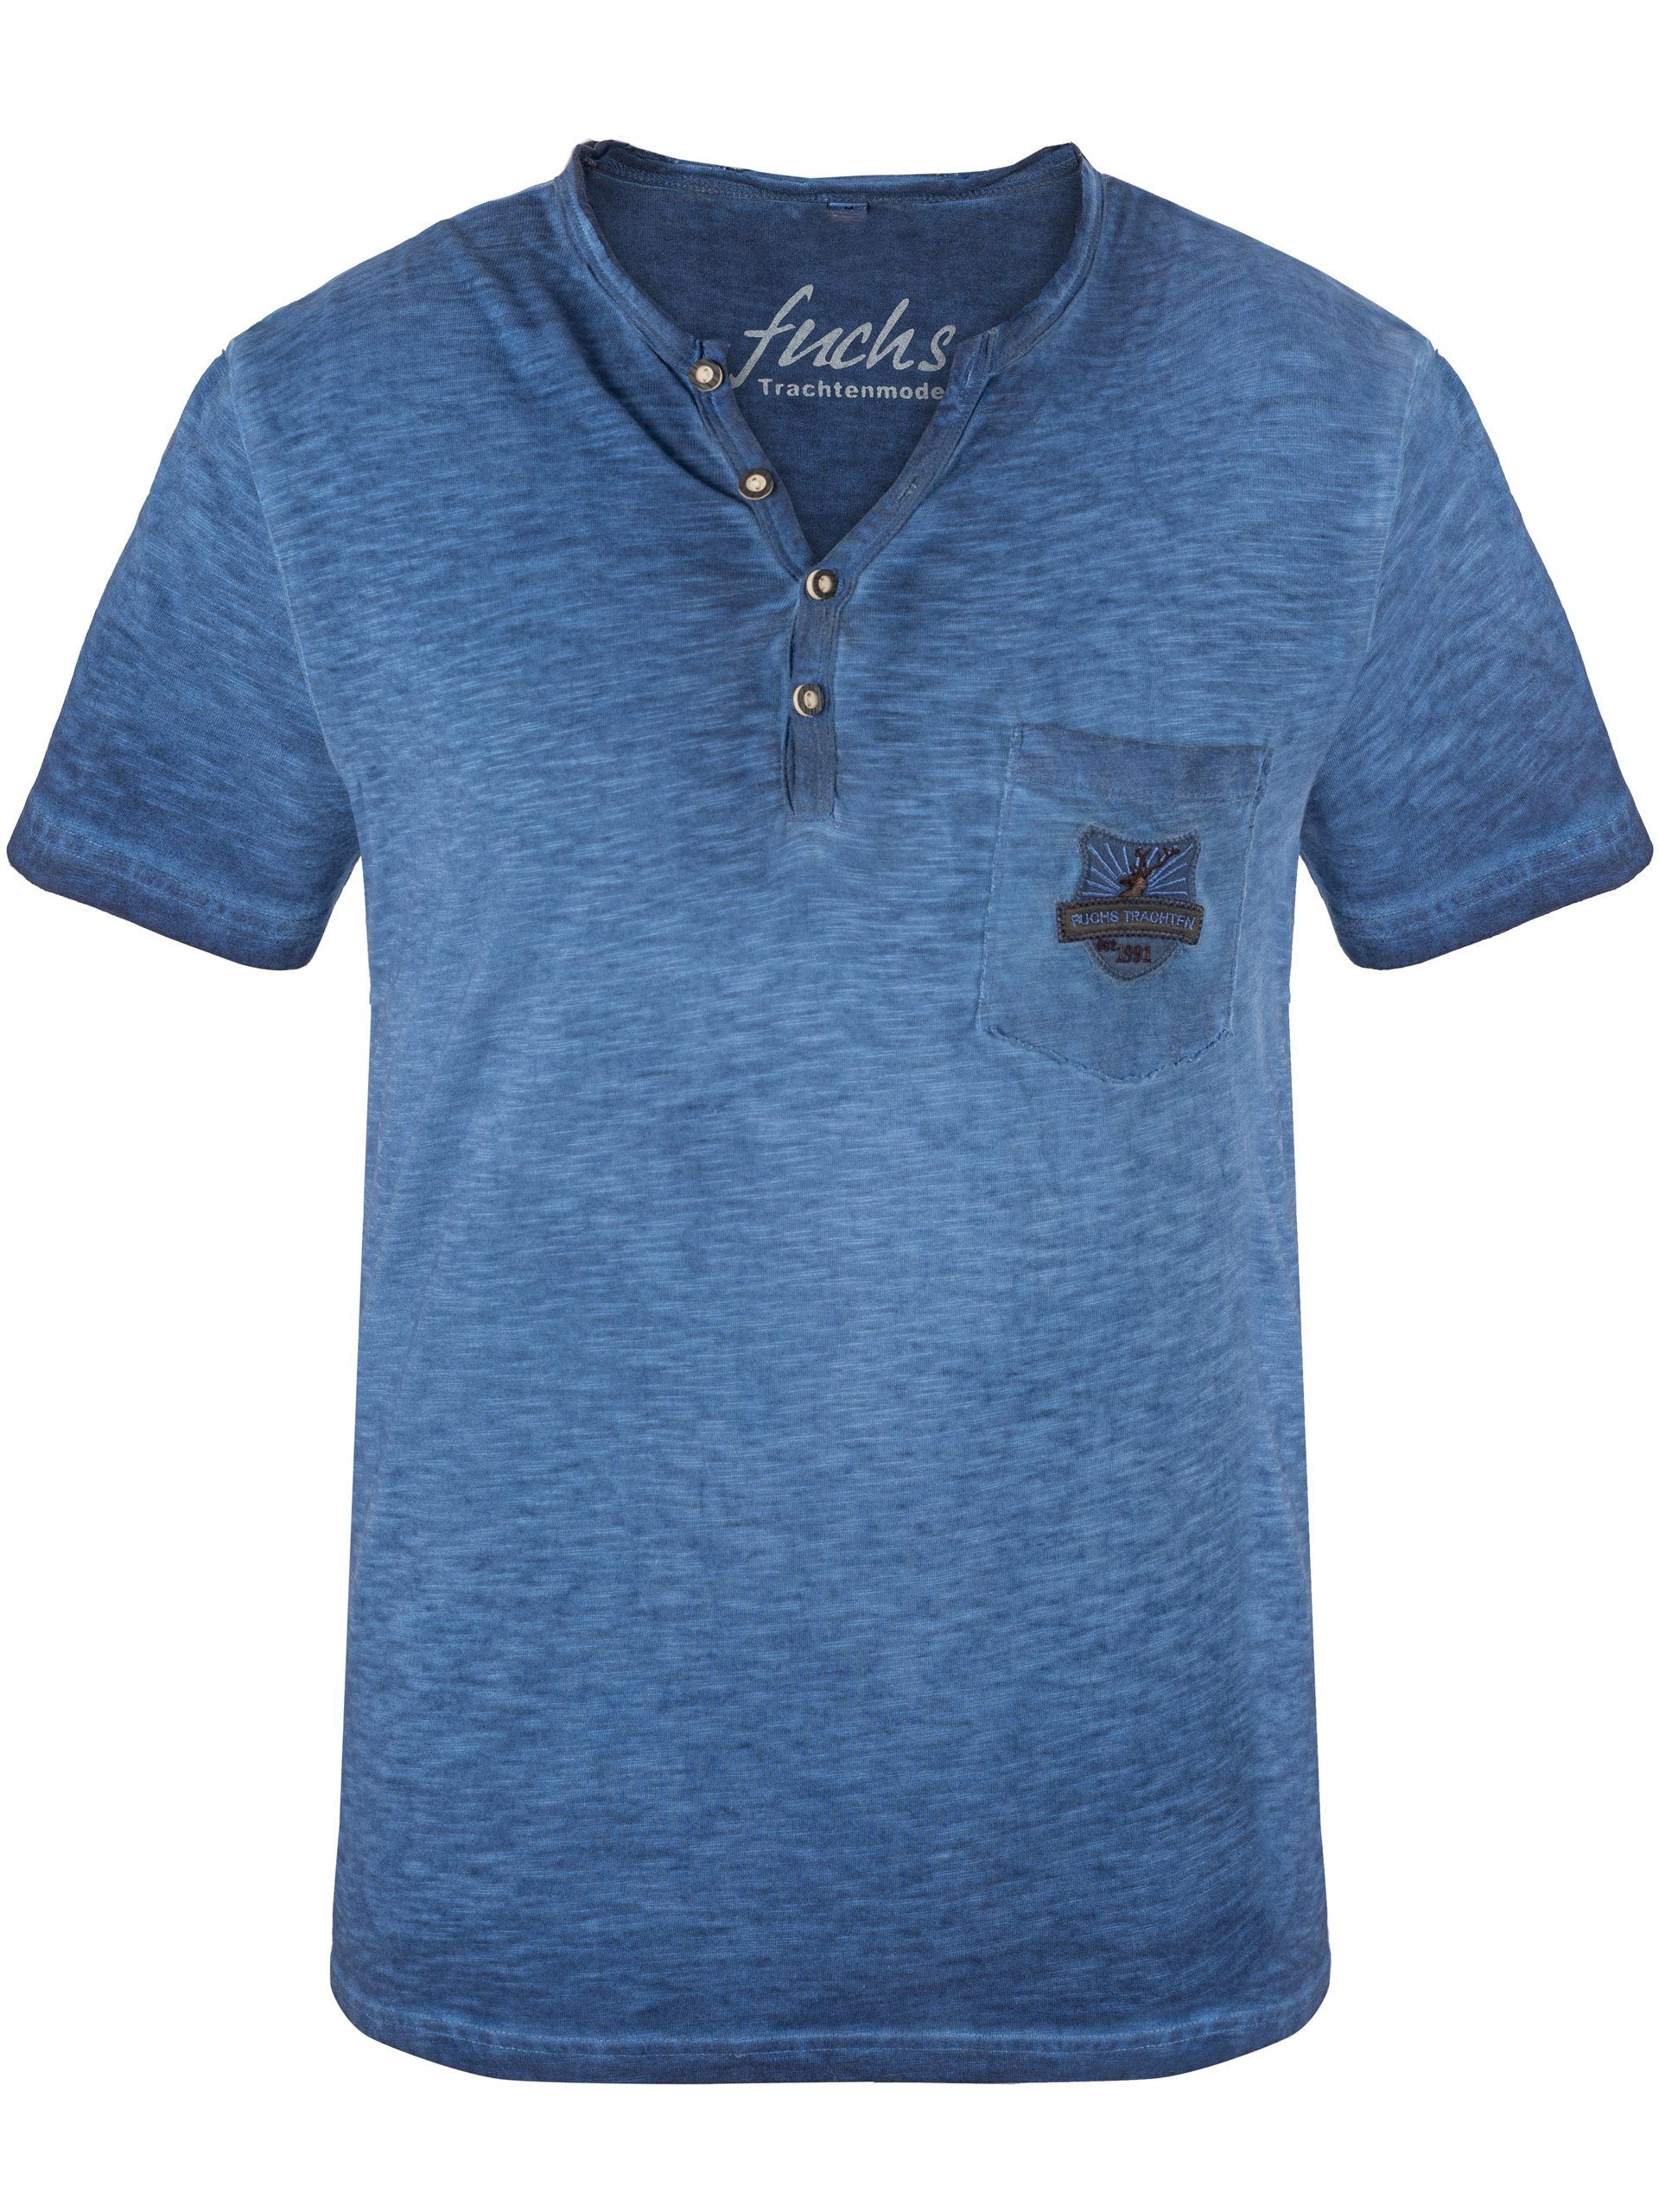 Baumwolle 100 FUCHS Trachten blau aus Shirt T-Shirt % Theo